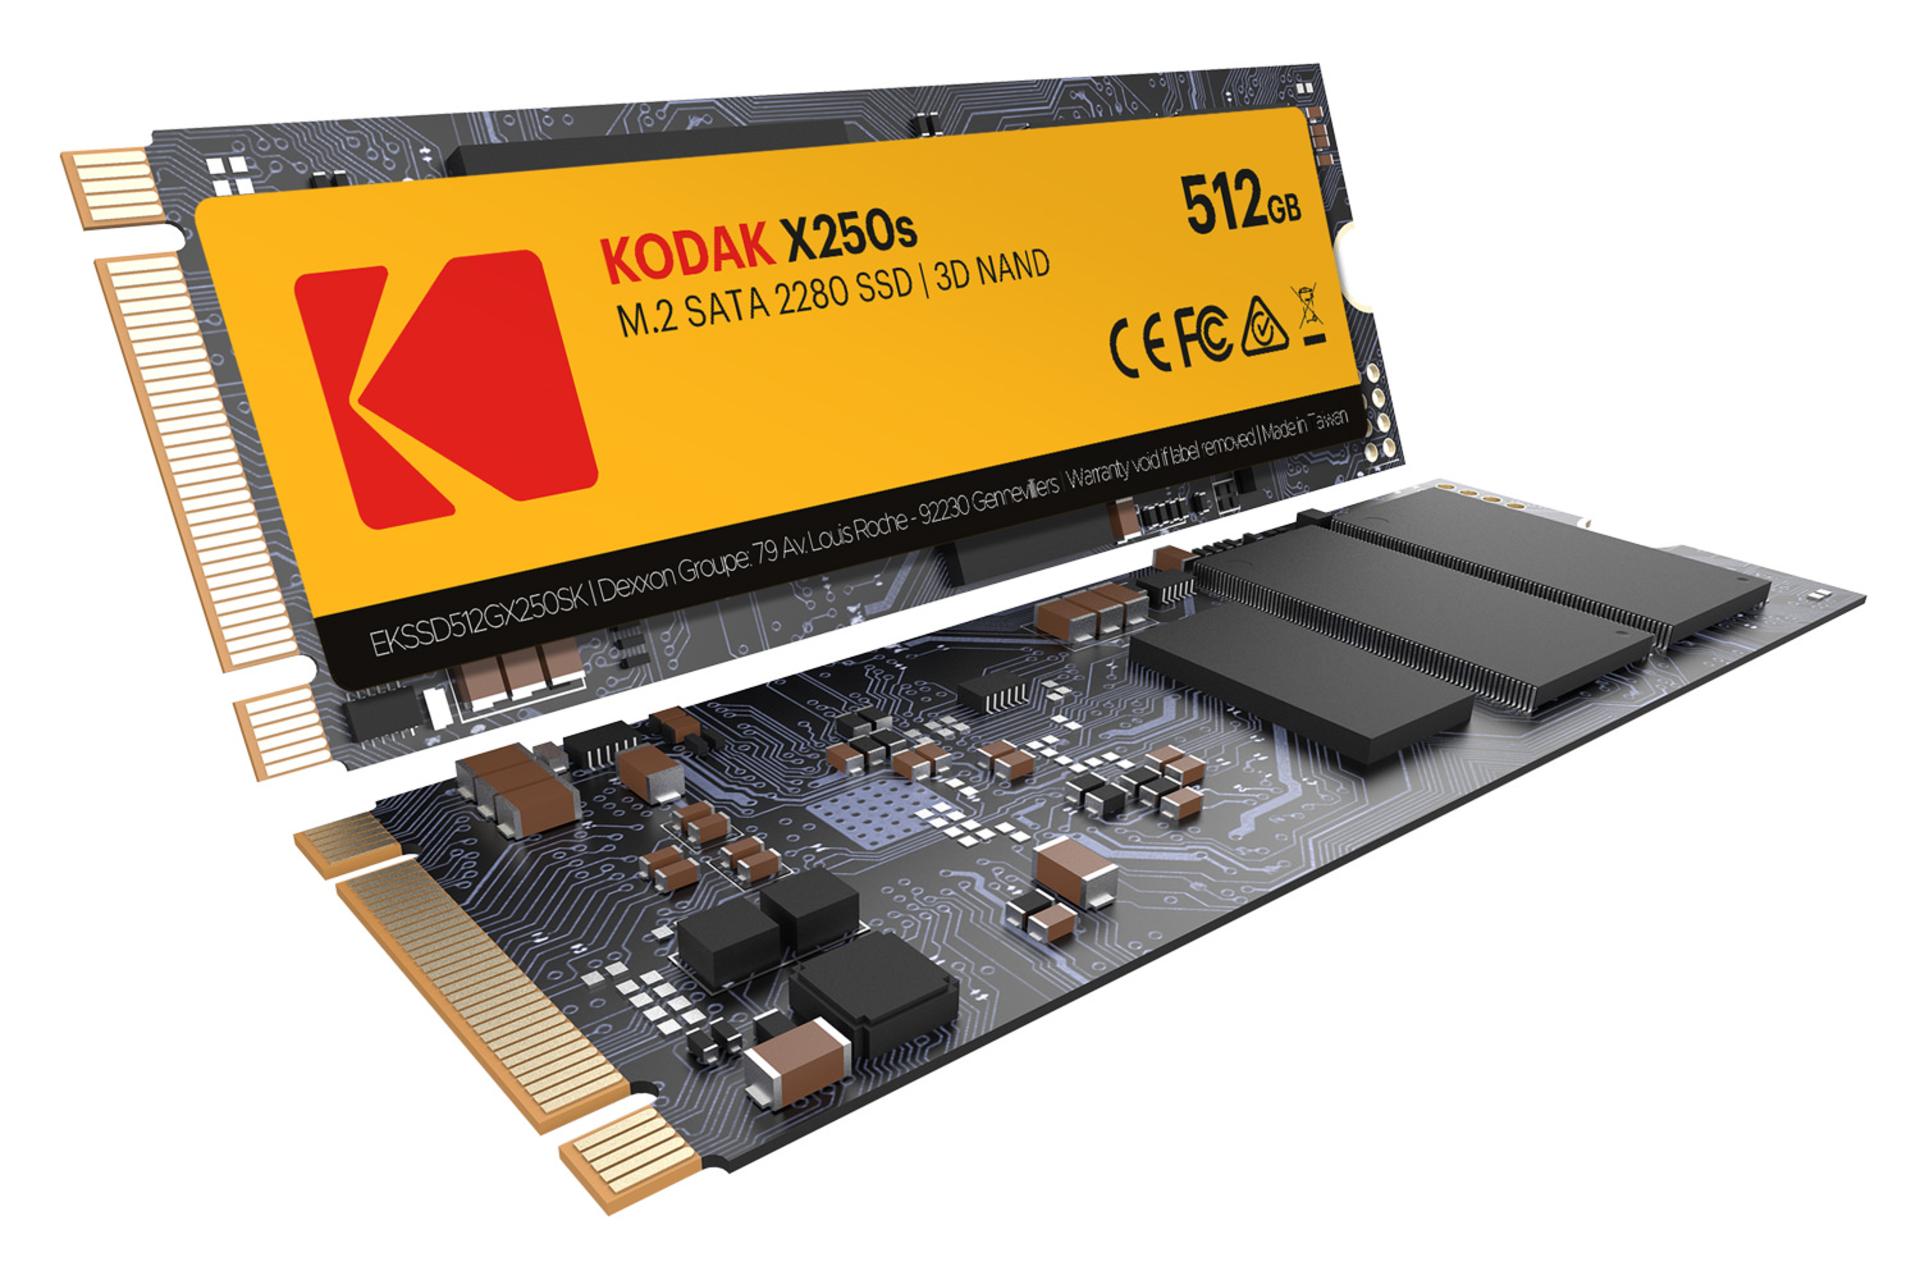 SSD کداک X250s ظرفیت 512 گیگابایت